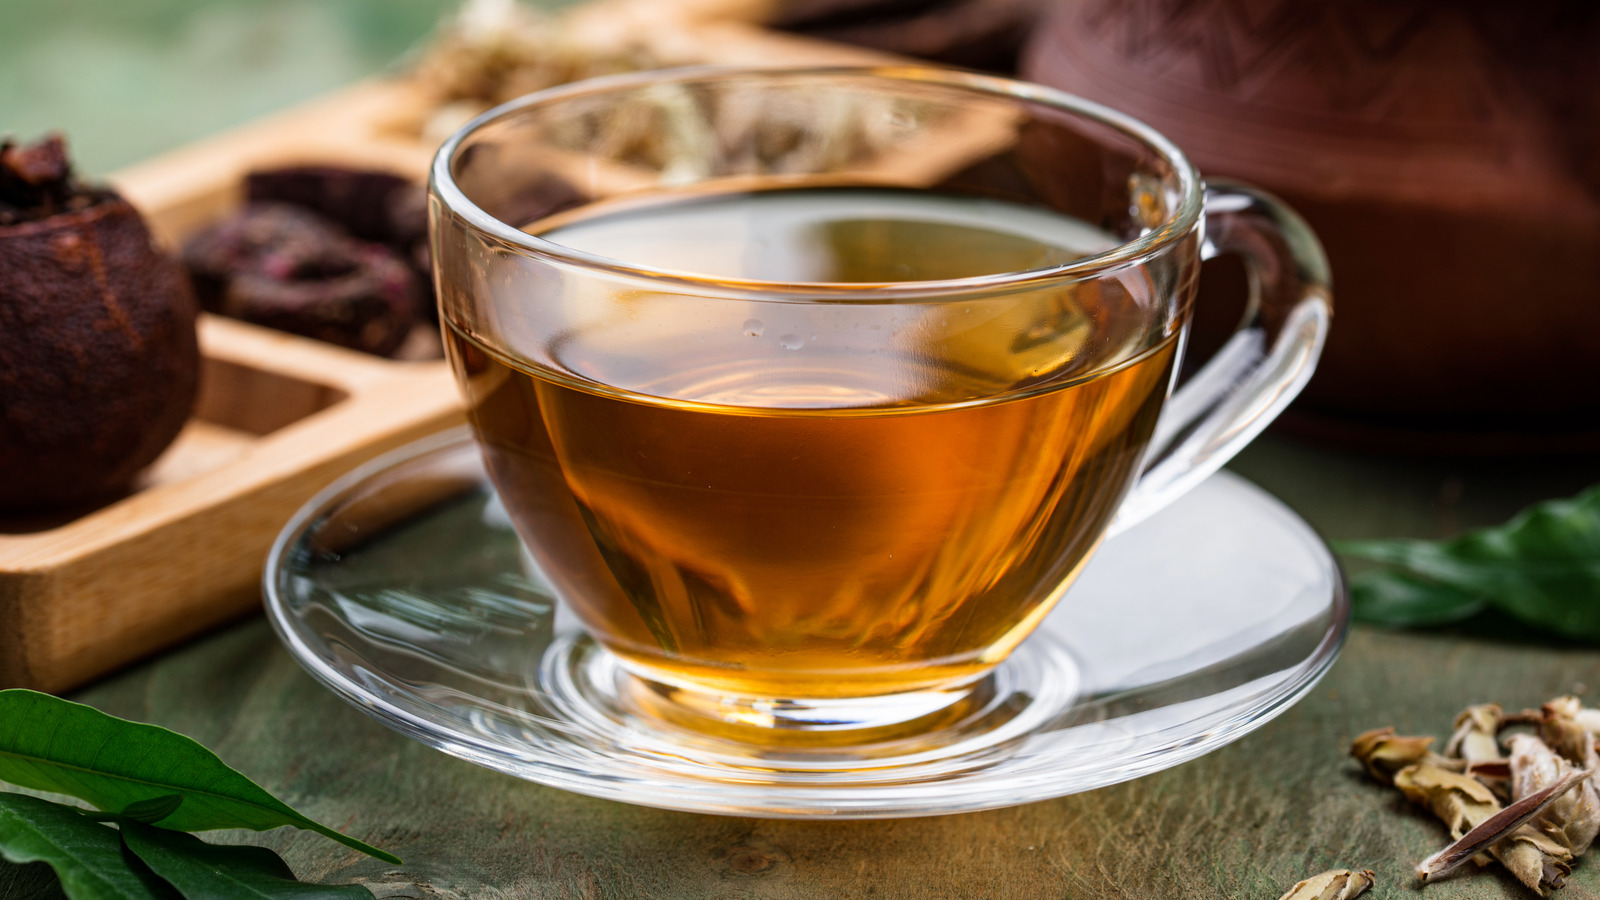 Sie können keine perfekte Tasse entkoffeinierten Tee genießen, ohne ihn vorher wegzuwerfen